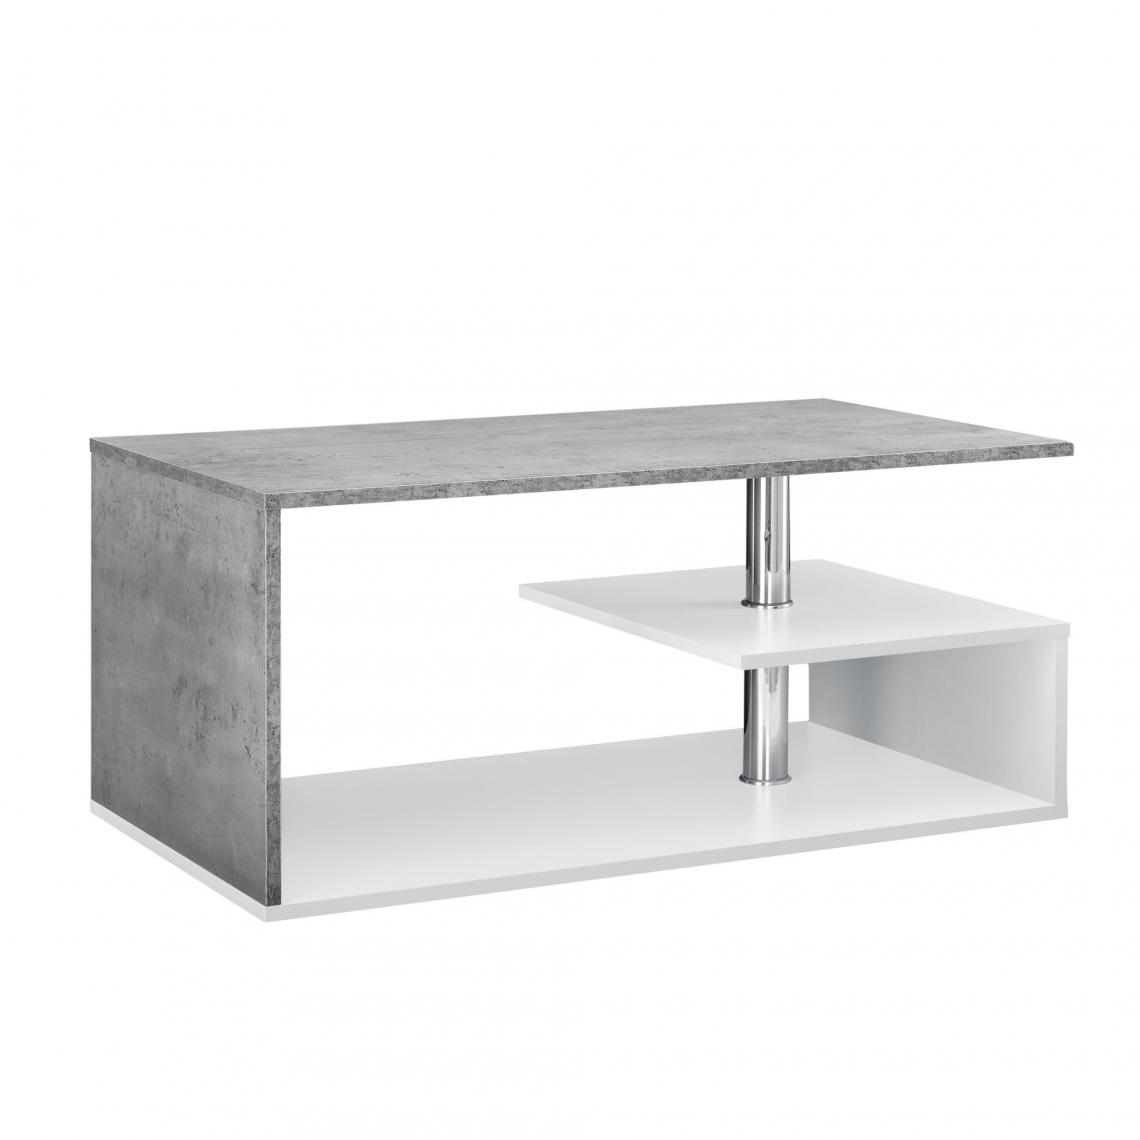 Helloshop26 - Table basse salon avec étagère rangement en MDF 90 cm blanc et béton 03_0004156 - Tables basses